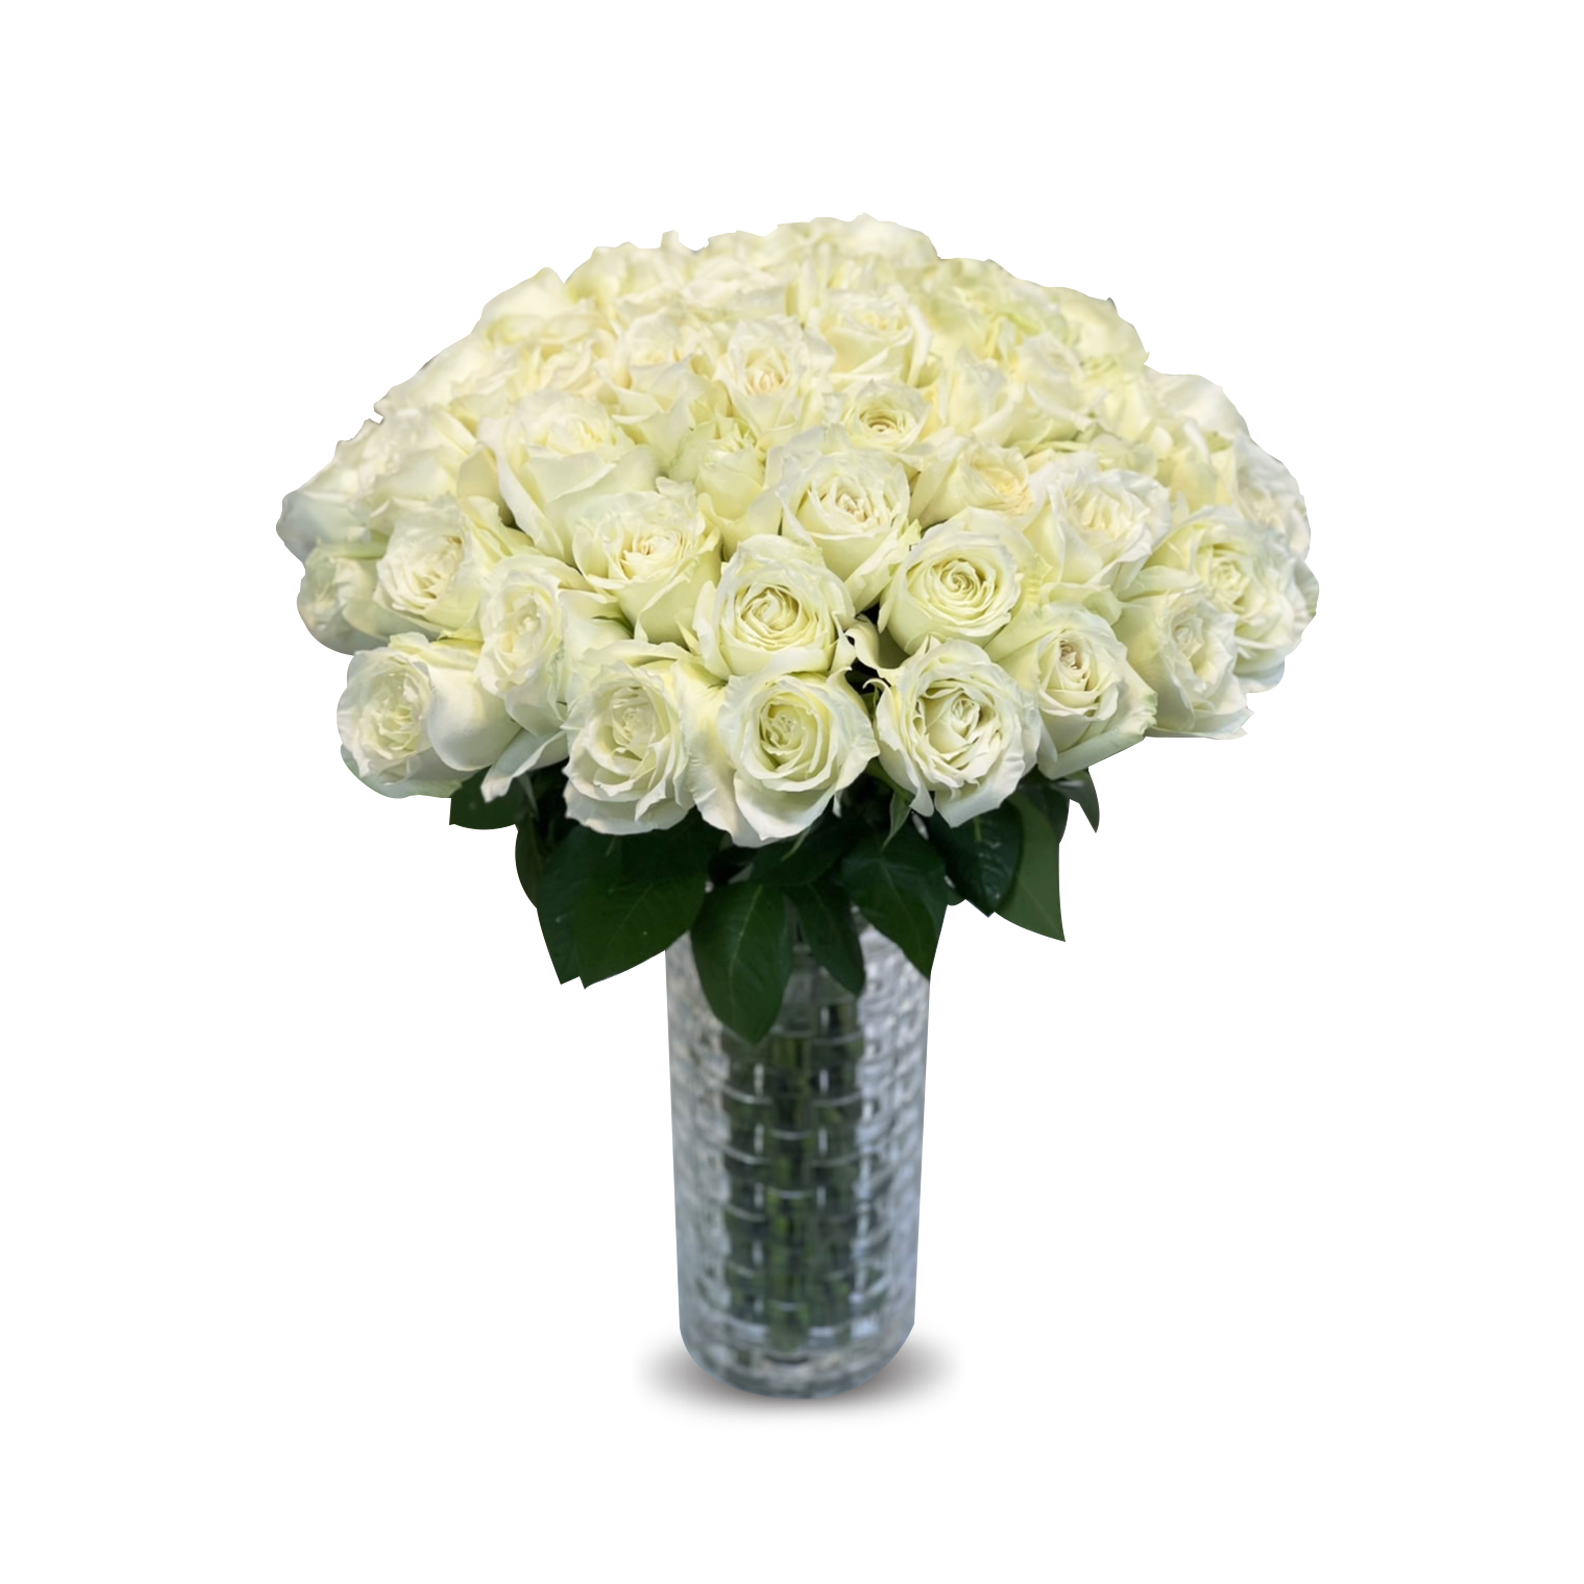 Elegant White Roses In Flower vase